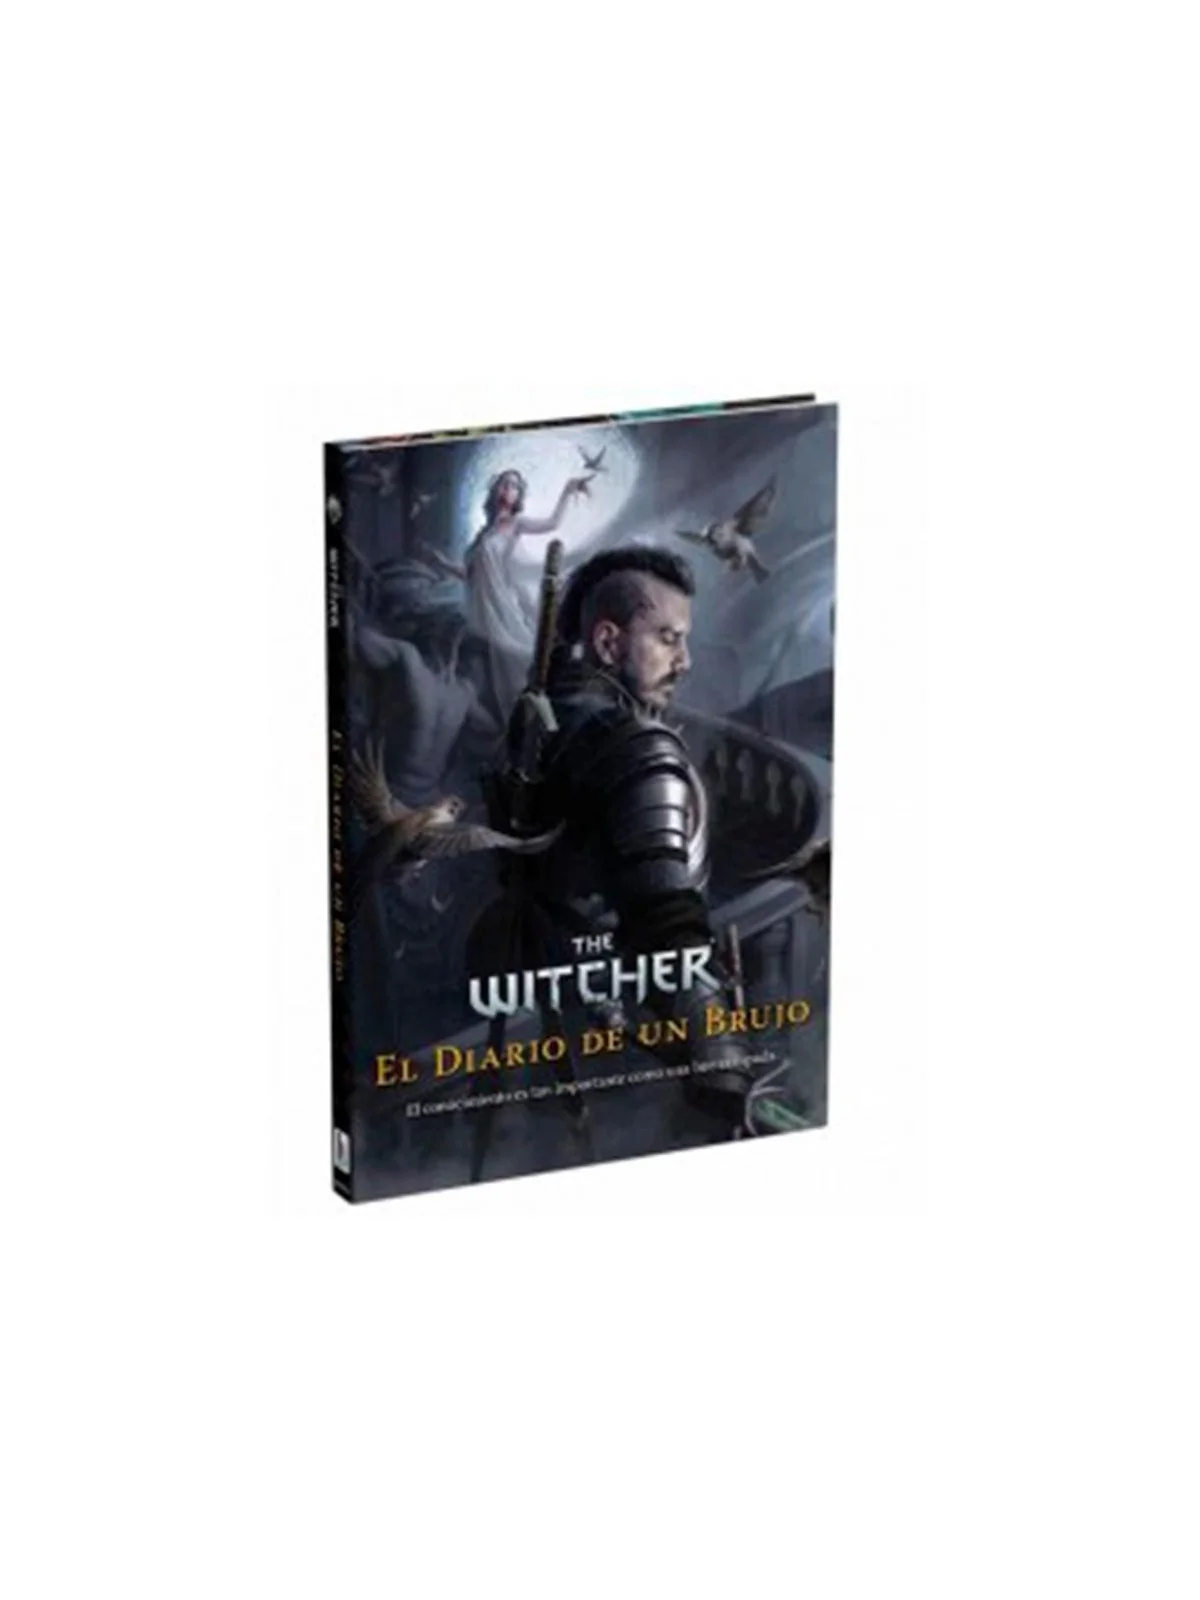 Comprar The Witcher Diario de un Brujo barato al mejor precio 28,45 € 